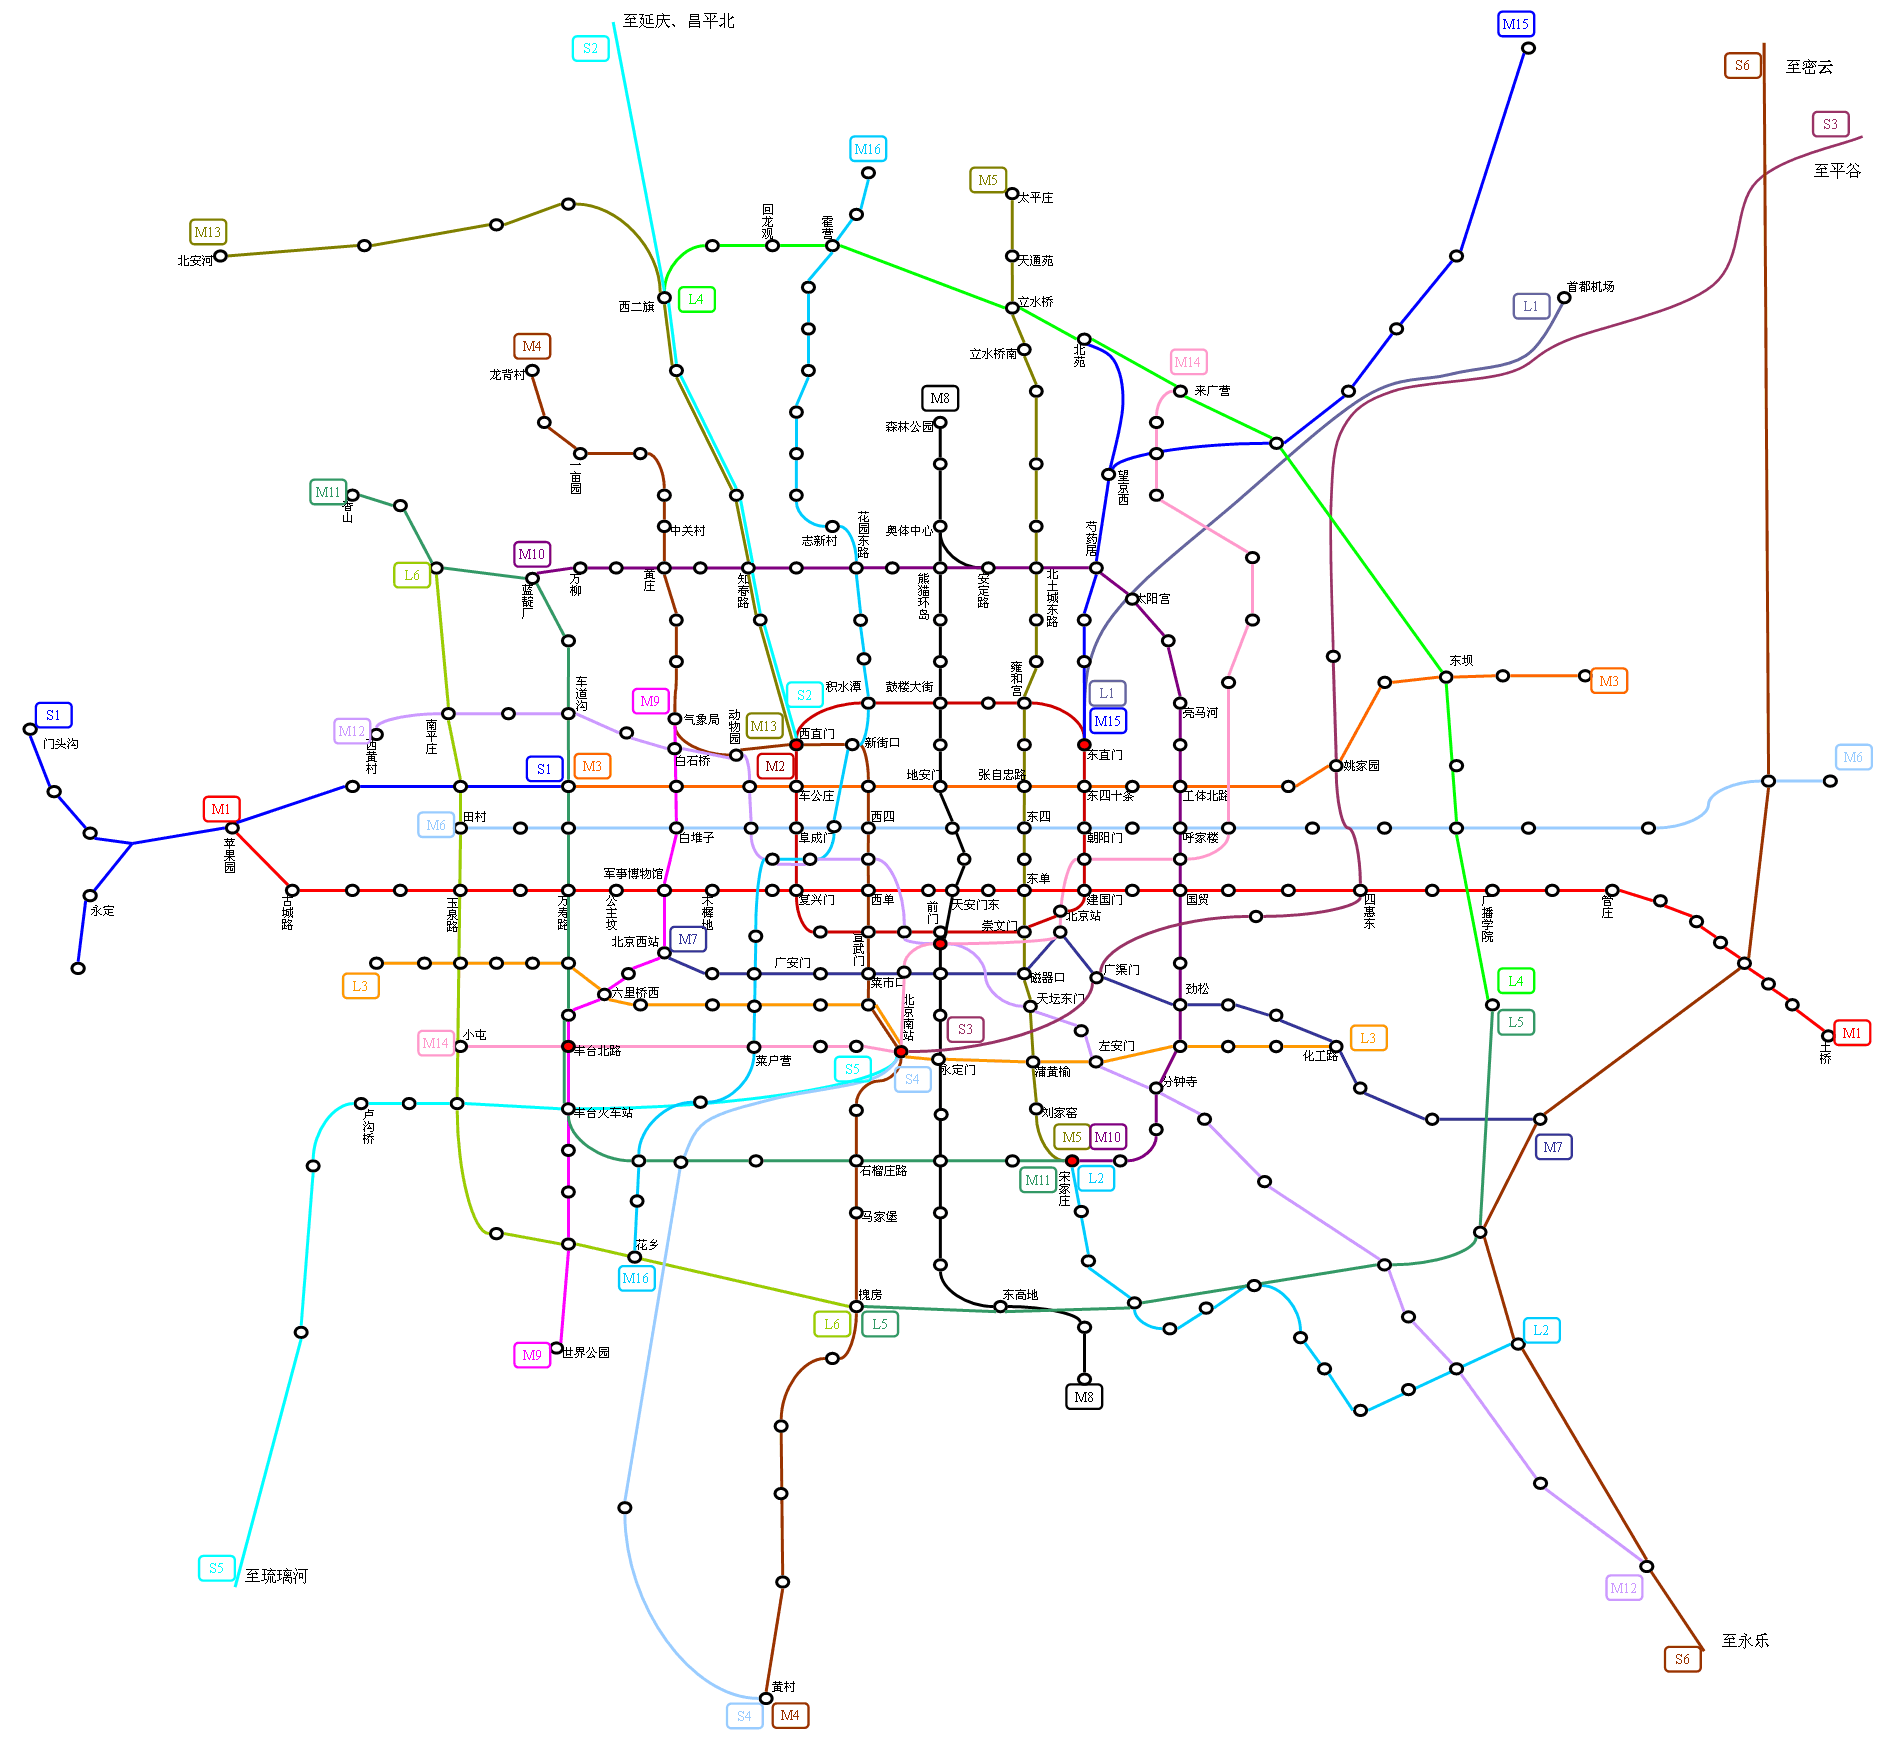 【北京地铁】北京城市轨道交通远景规划2035+(2020.5.20更新) - 哔哩哔哩